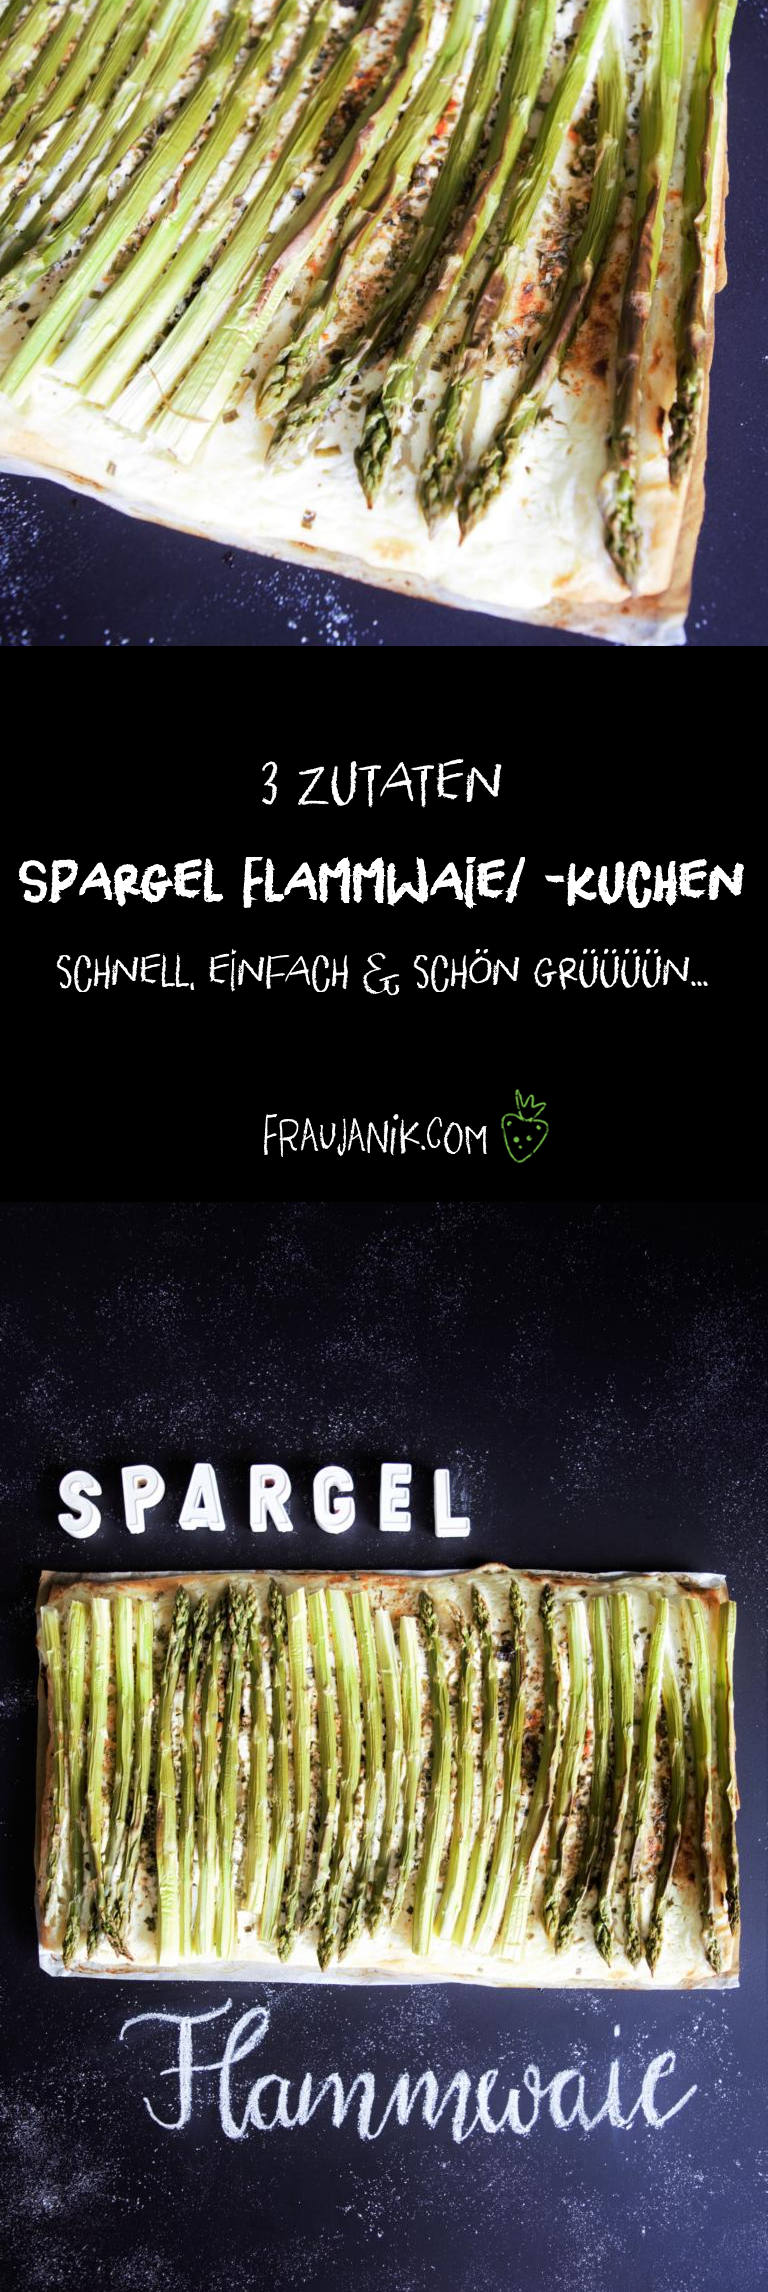 Spargel Flammwaie/Flammkuchen